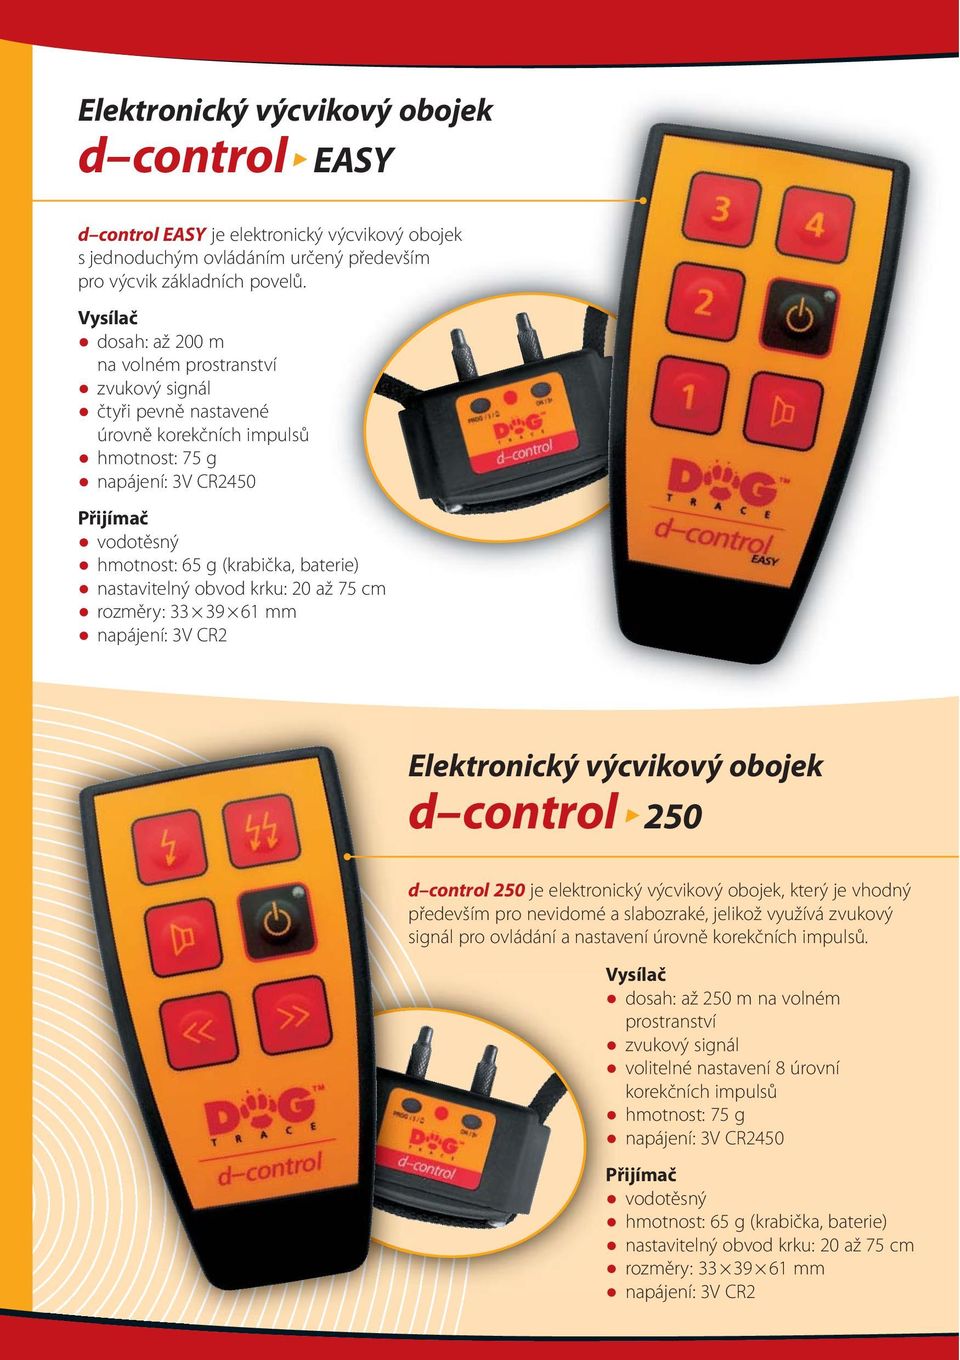 obojek d control 250 d control 250 je elektronický výcvikový obojek, který je vhodný především pro nevidomé a slabozraké, jelikož využívá zvukový signál pro ovládání a